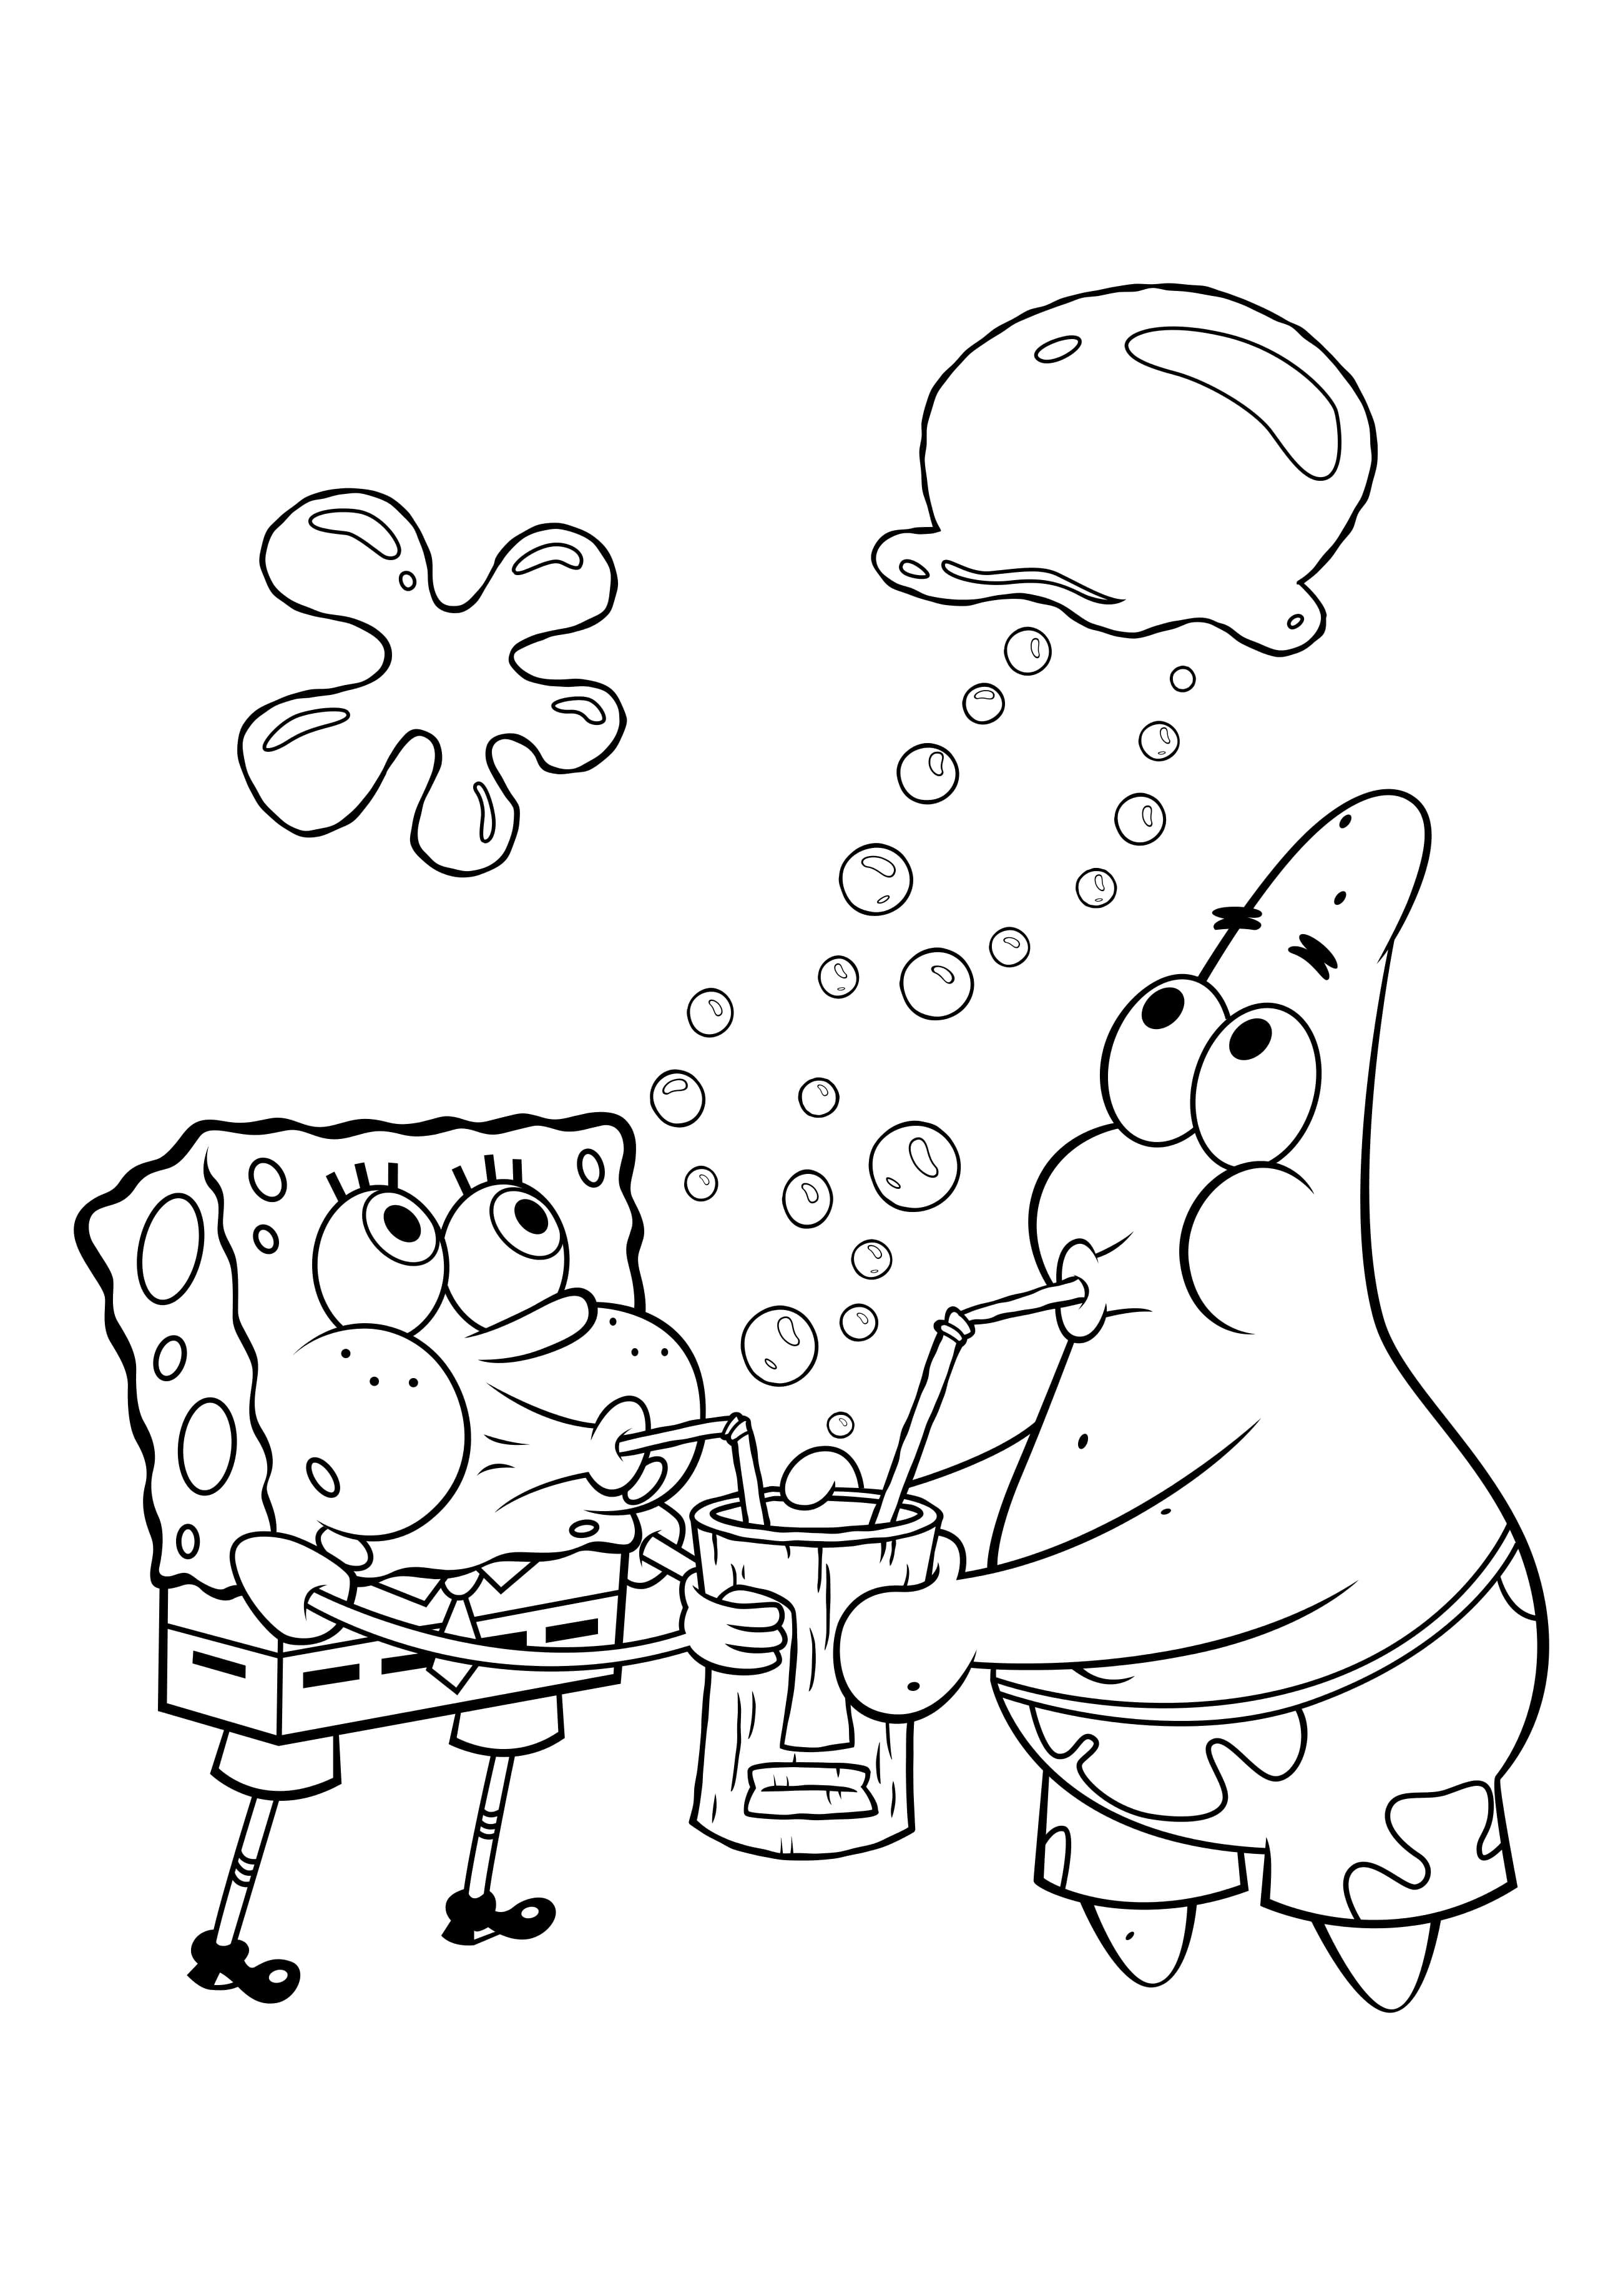 Раскраски из мультфильма Губка Боб Квадратные штаны (Sponge Bob Squarepants) скачать